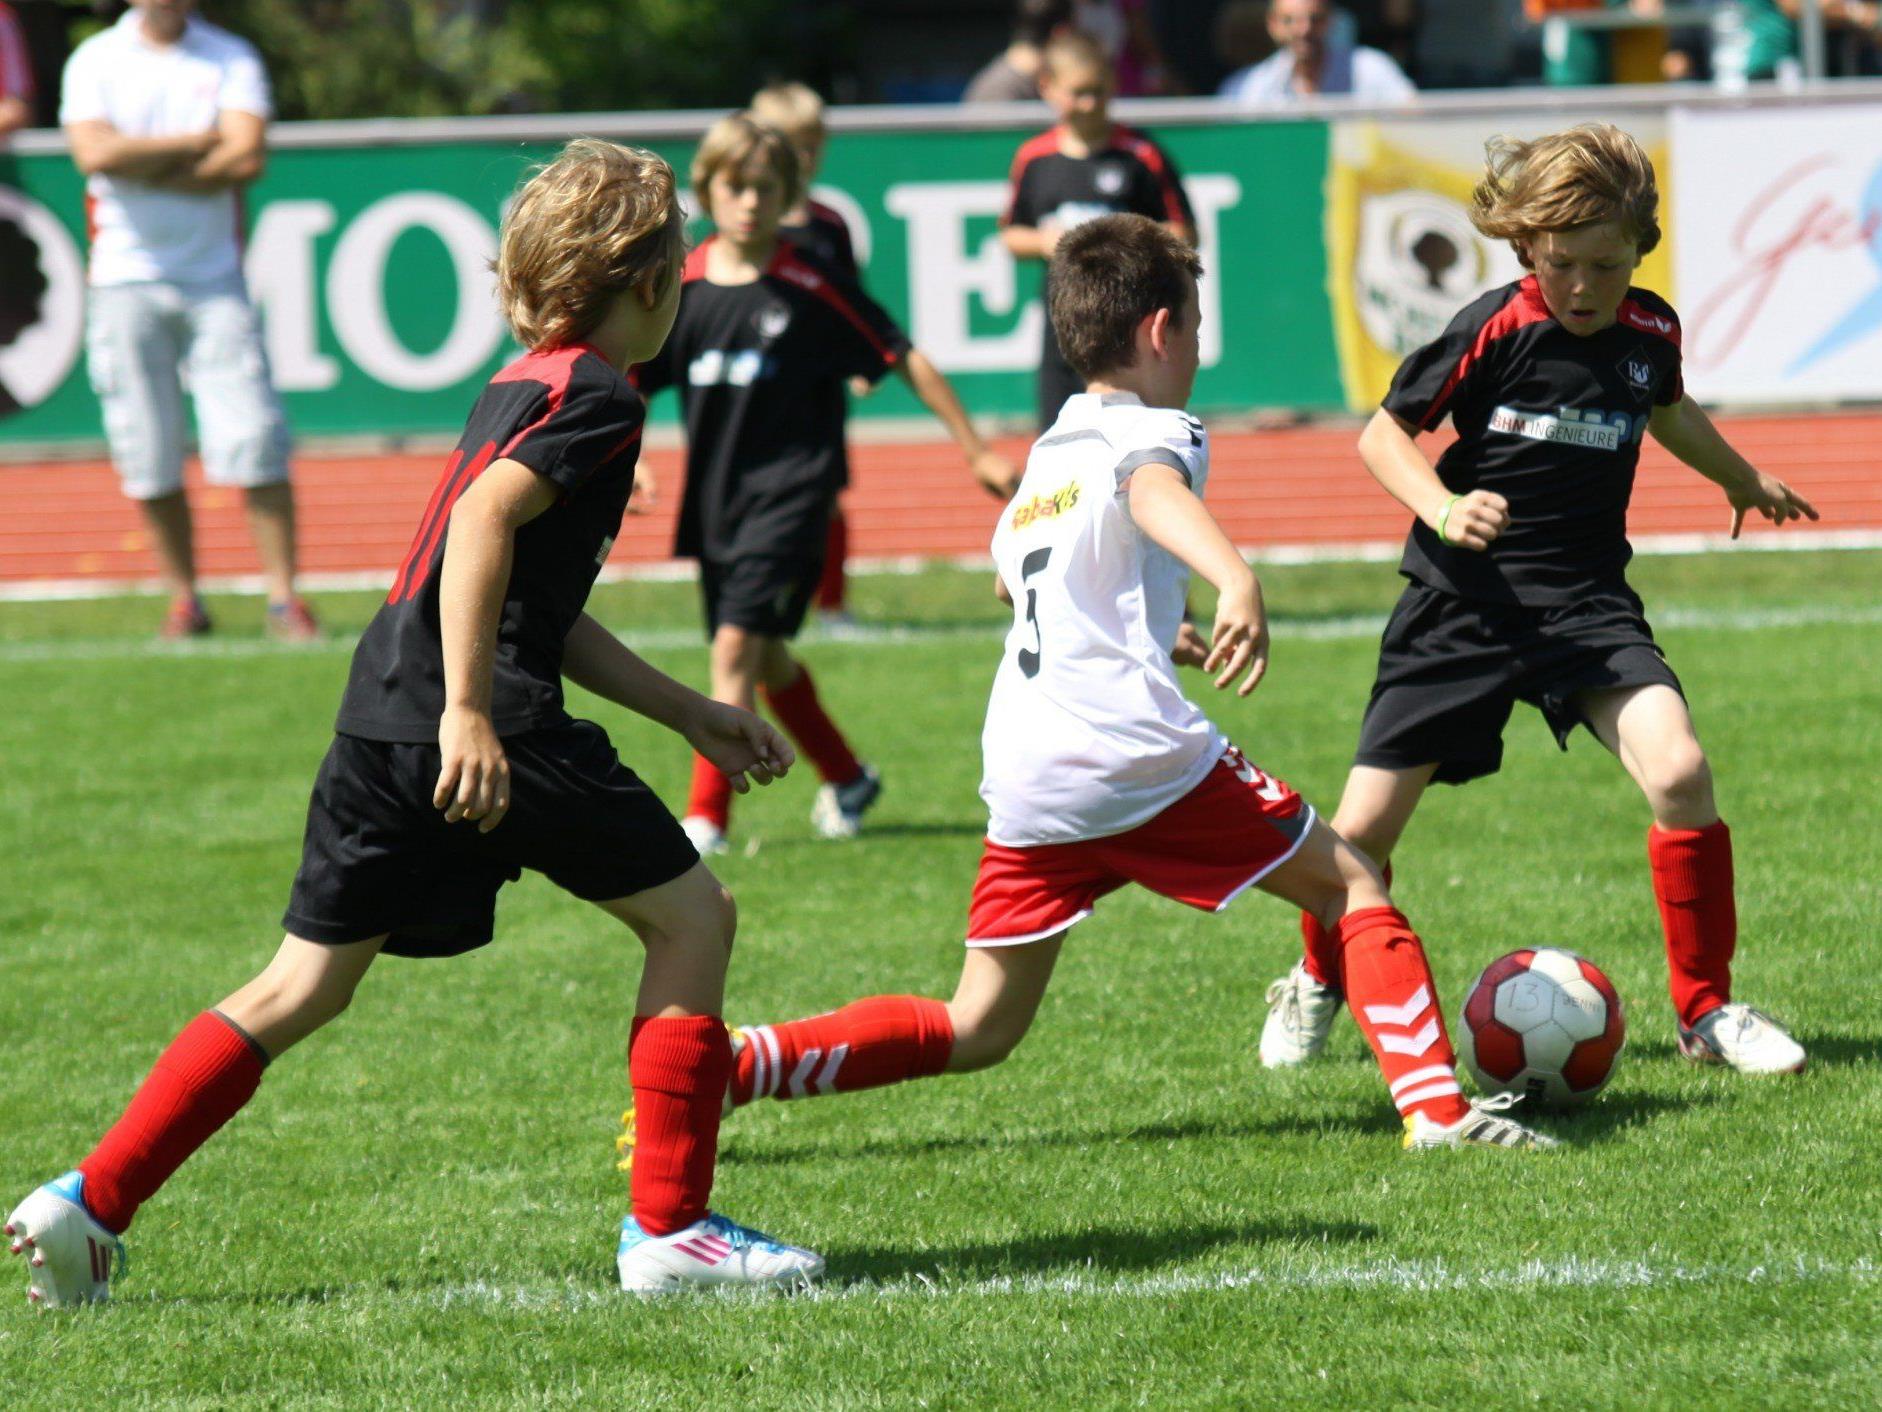 Symbolbild: Götzis U-10 gegen FC Dornbirn U-10 wurde abgebrochen und wird neu ausgetragen.